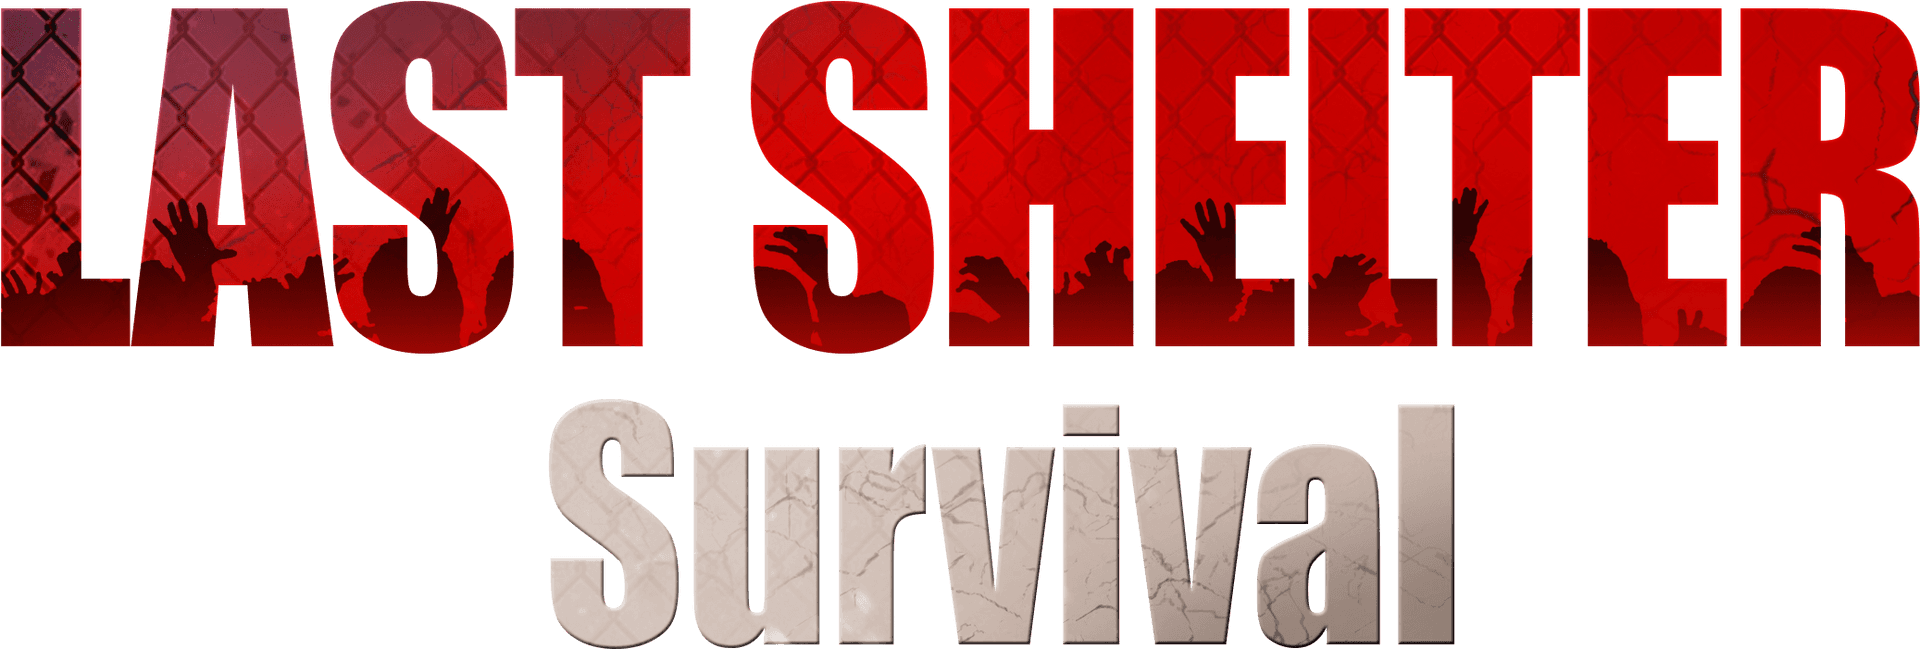 Last Shelter Survival Game Logo PNG